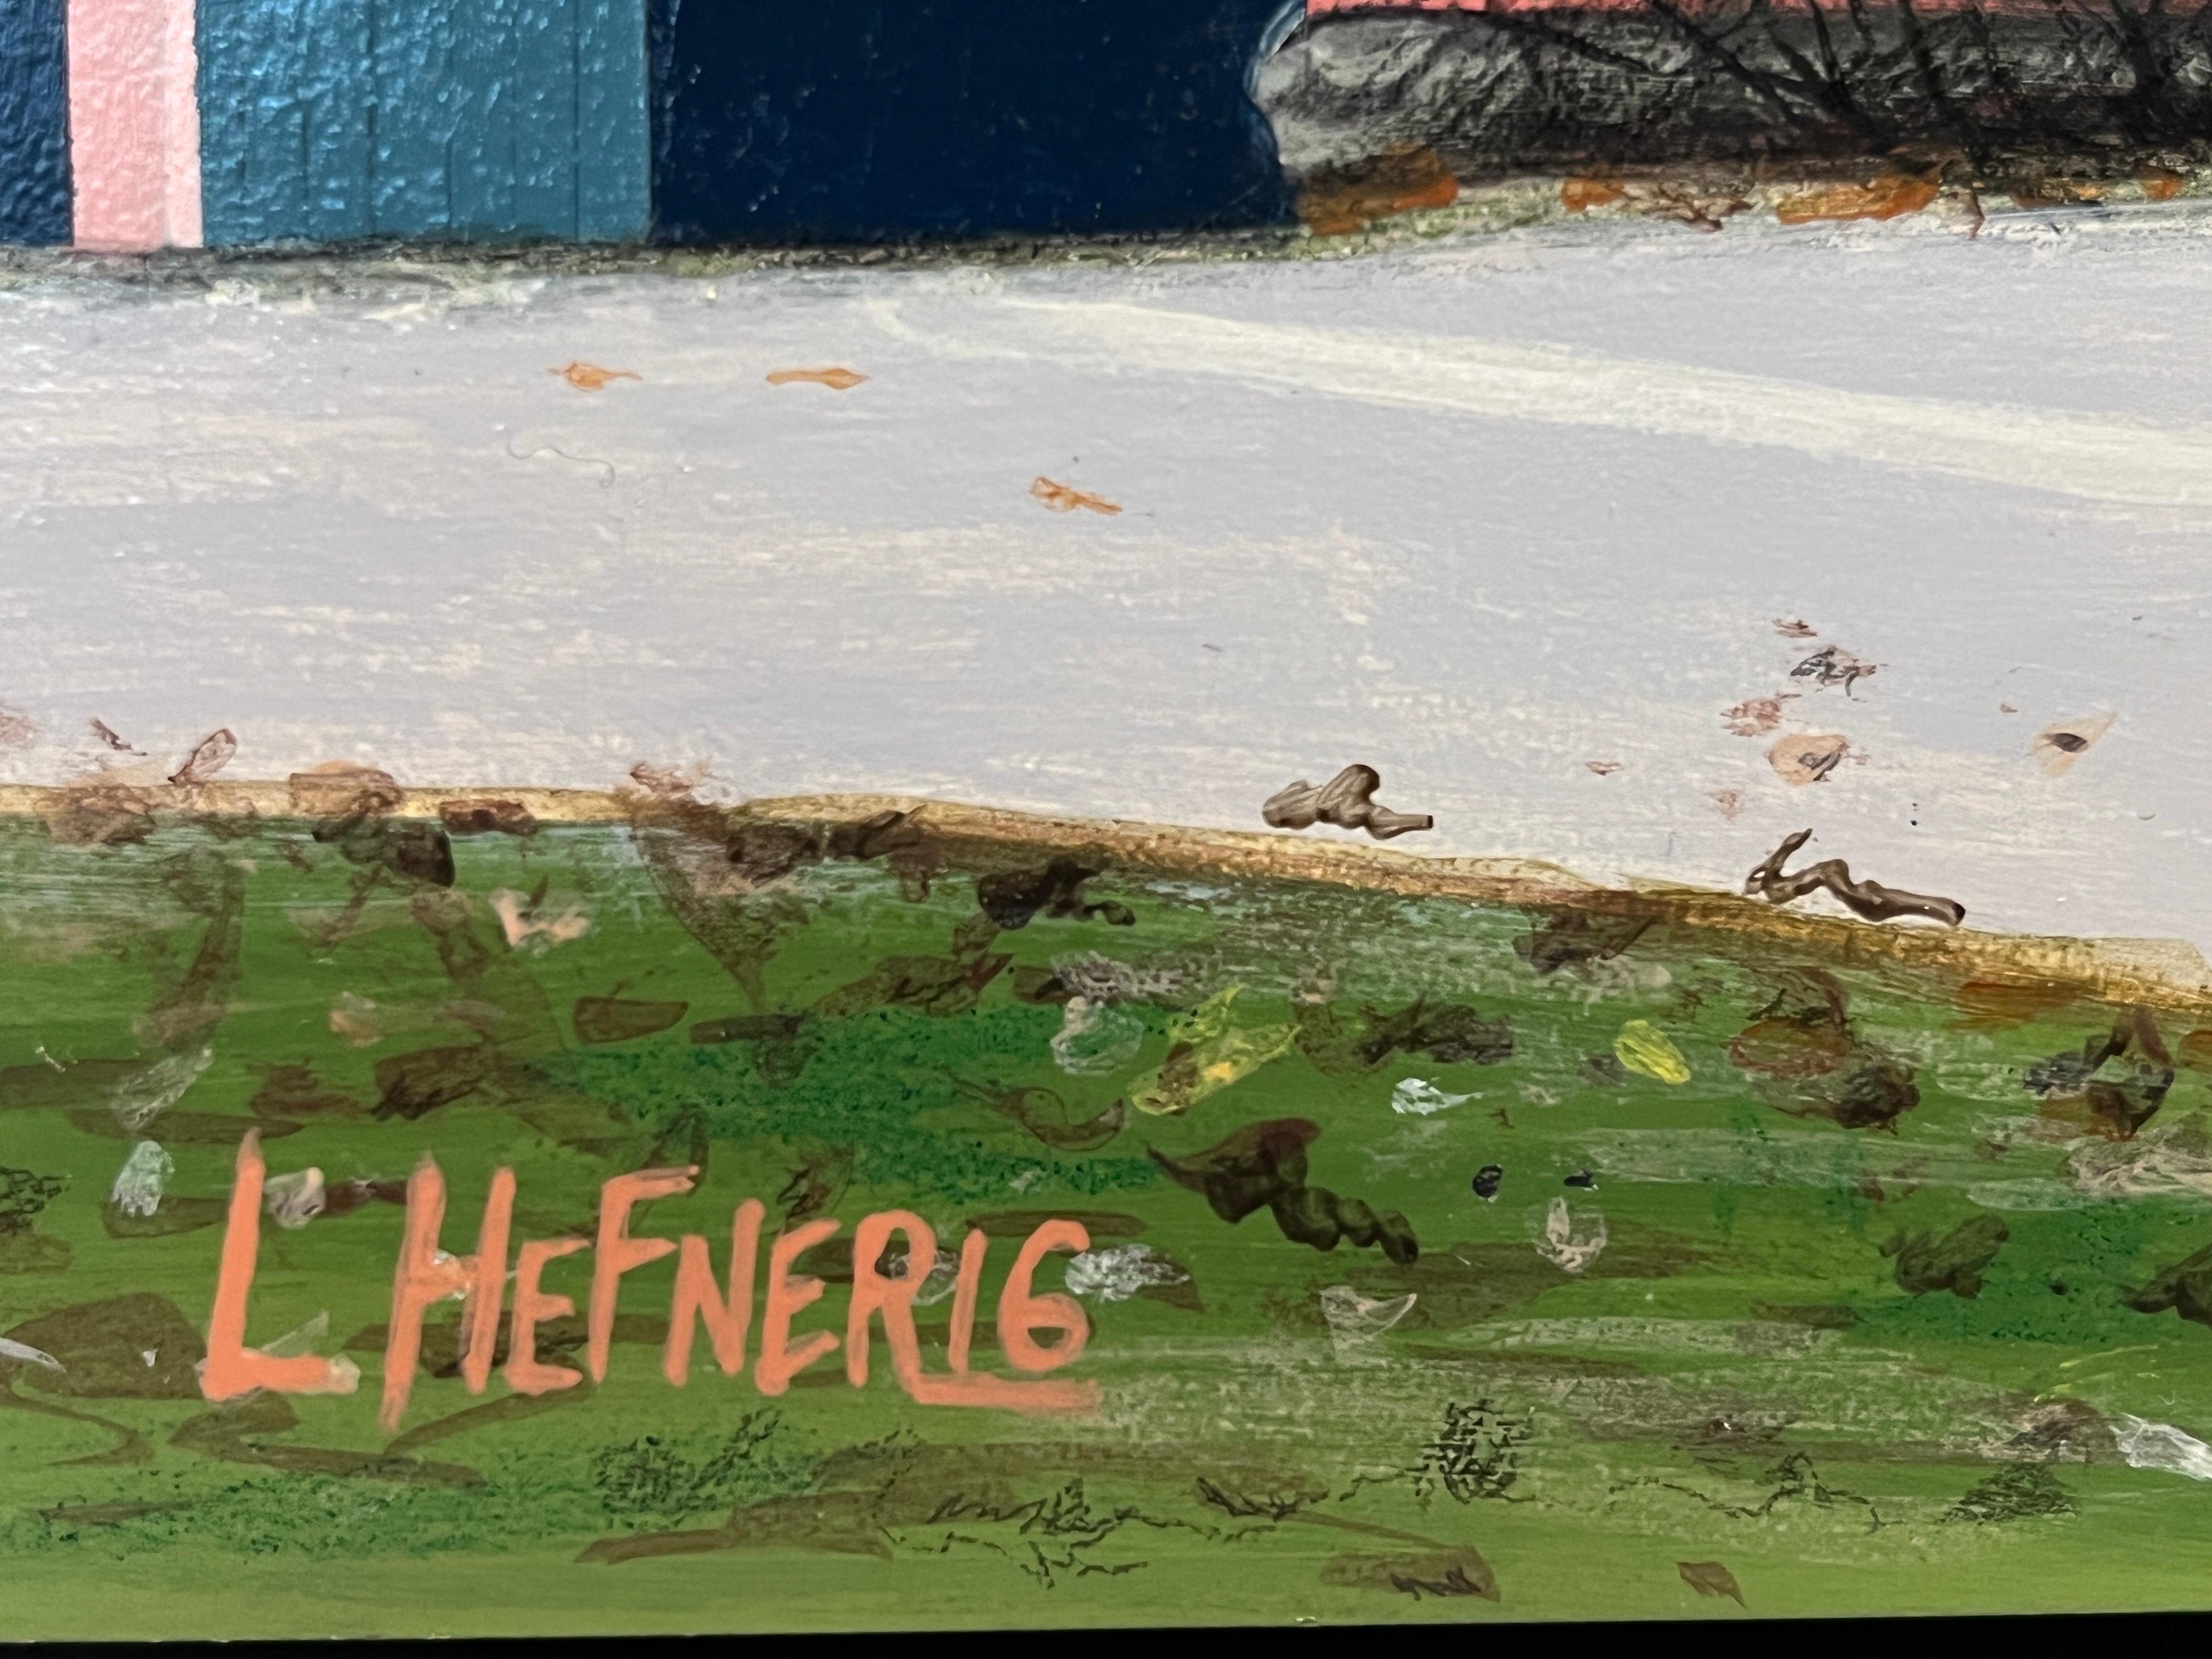 Linda Hefner ist bekannt für ihre lebendigen Acrylbilder von historischen Scheunen und Architekturen in Neuengland. Hefners Liebe zu gefährdeten amerikanischen Kulturgütern ist in der Vergangenheit verwurzelt, auch in ihrer eigenen: Sie verbrachte